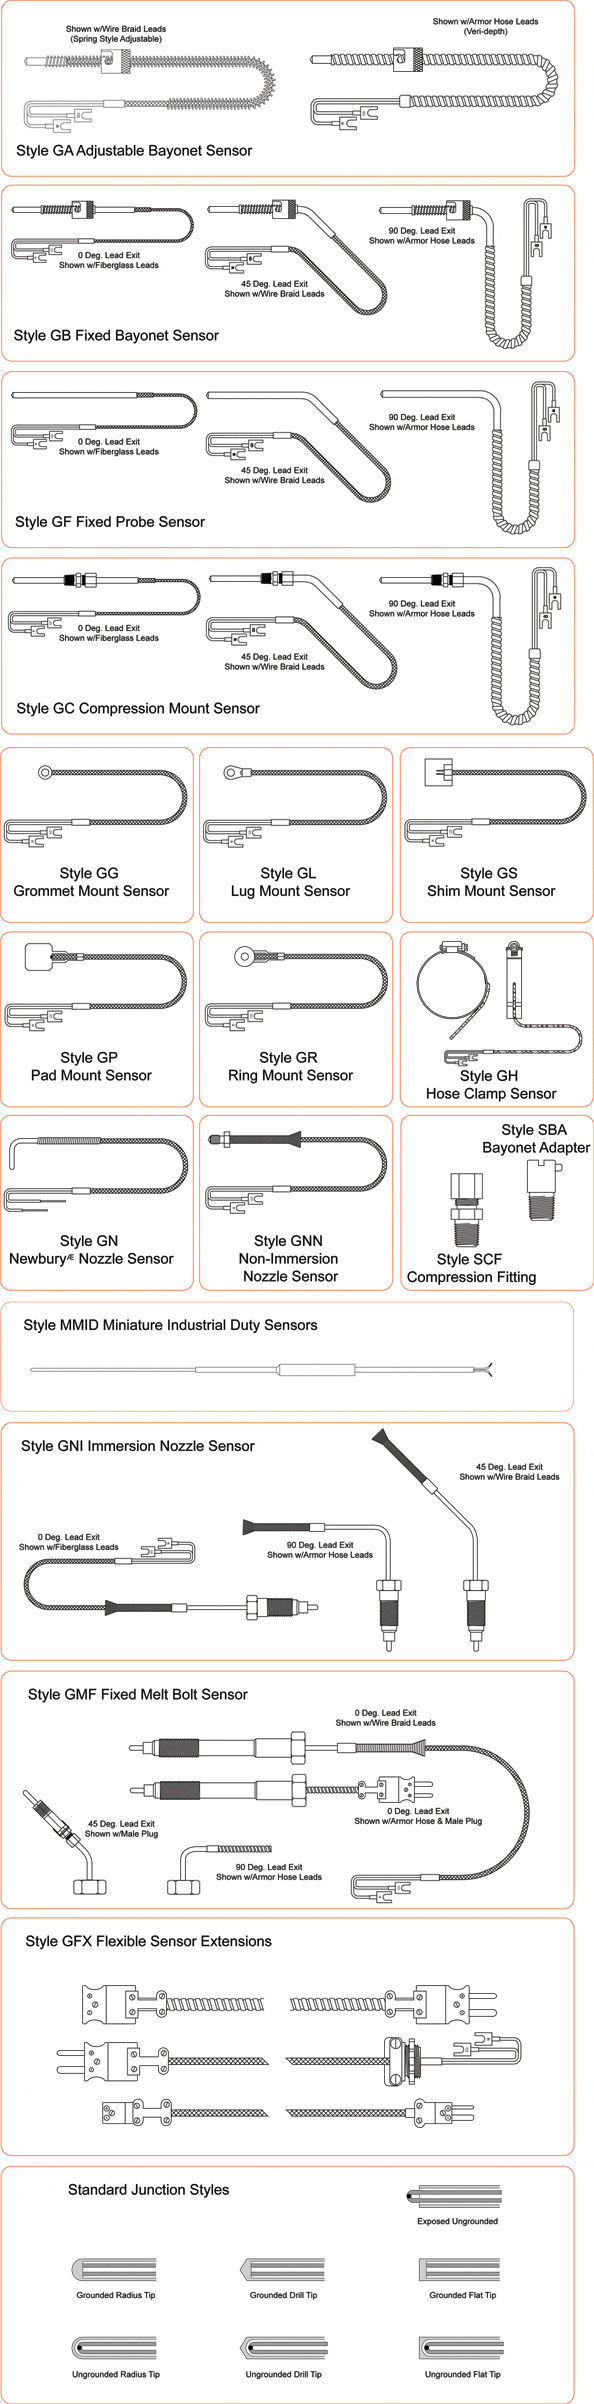 Standard Designs of Plastic & General Purpose Sensors